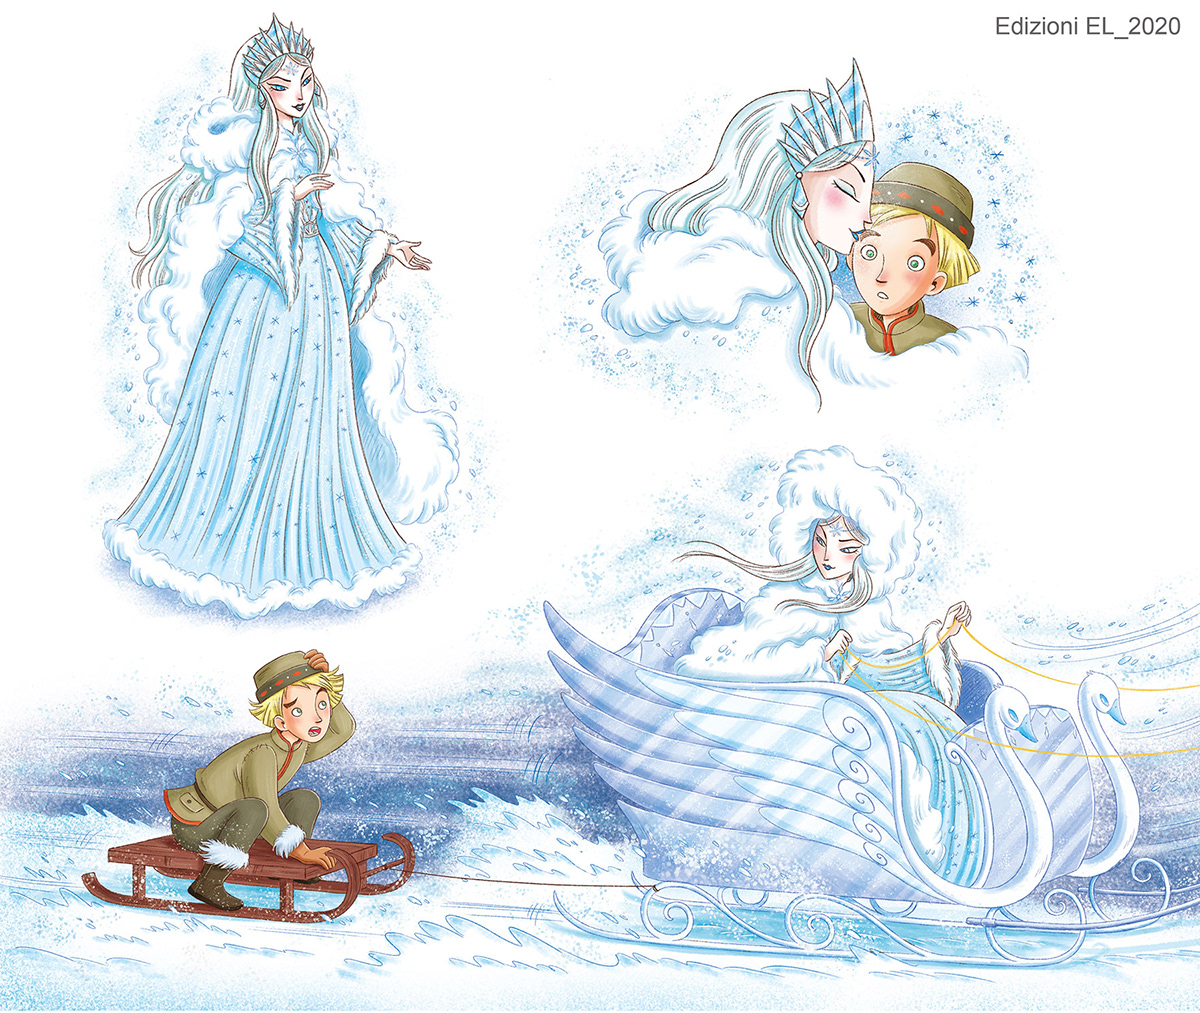 snow queen fairytale kidlitart children's book color snow winter